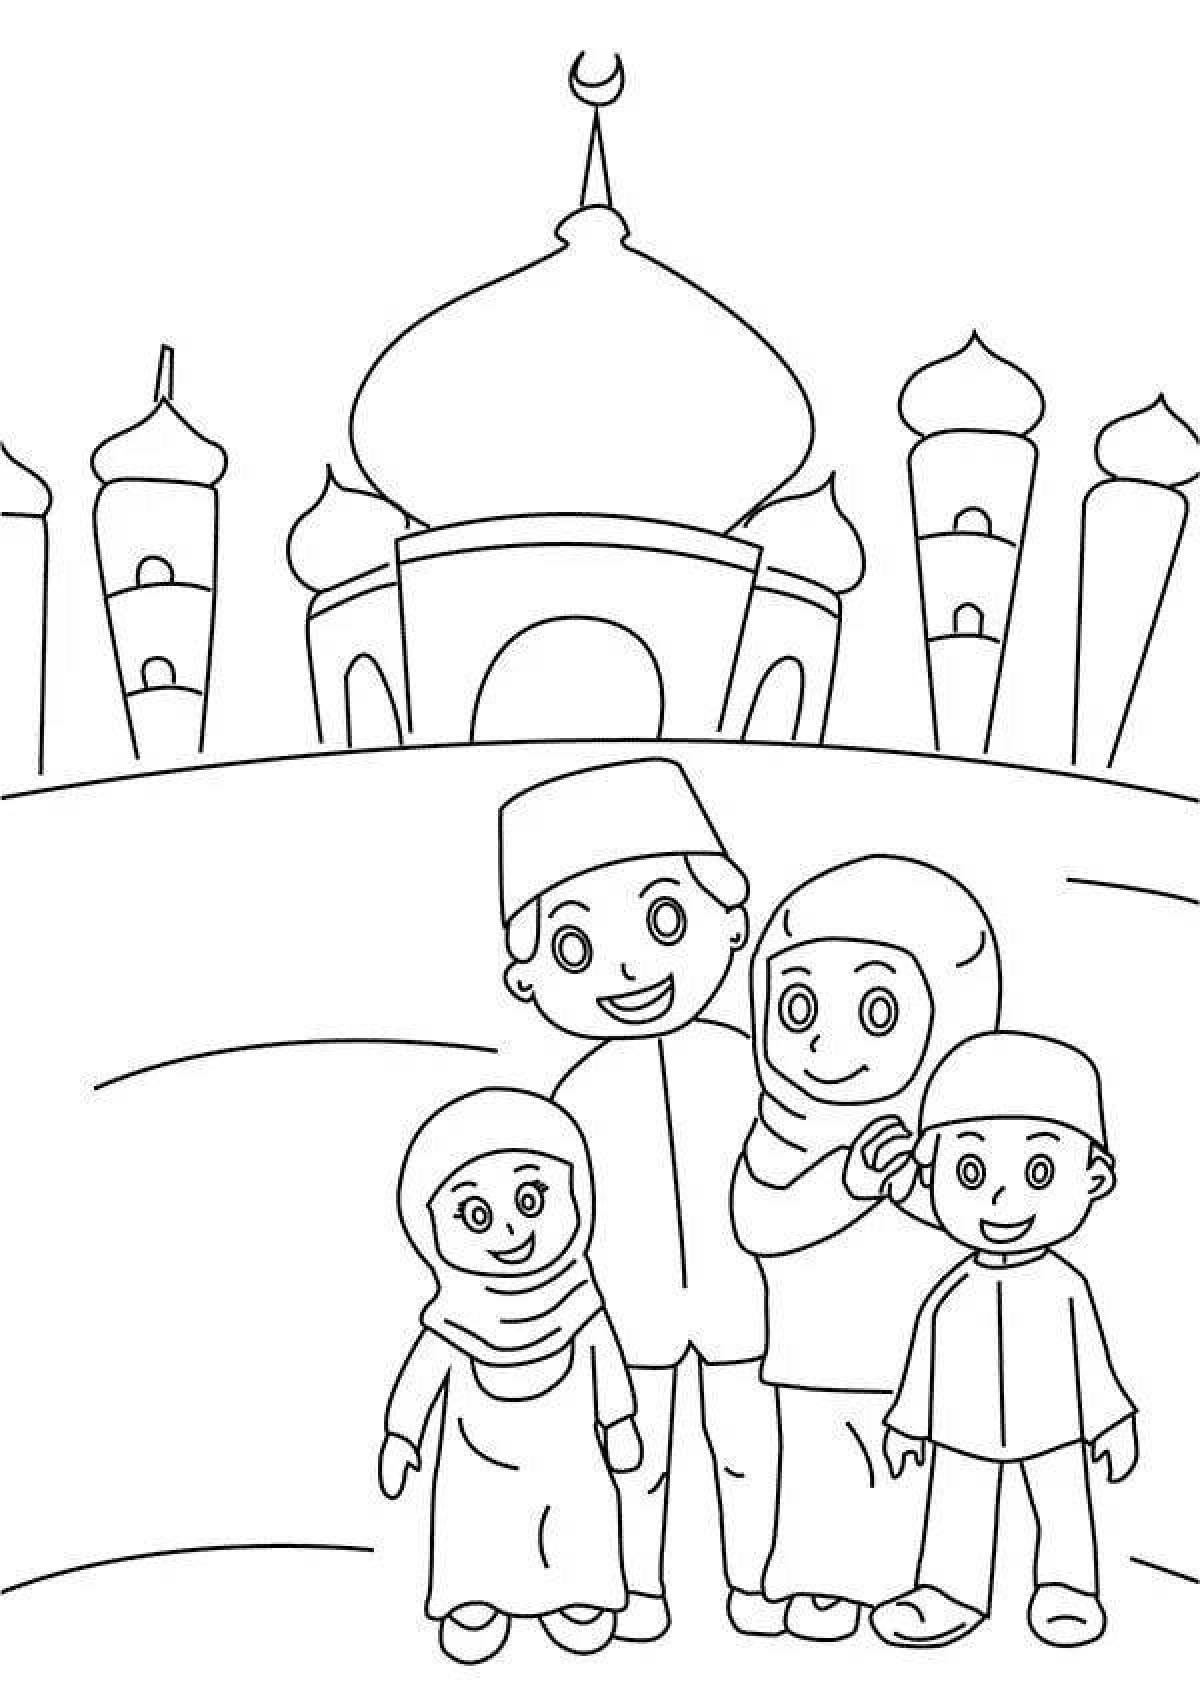 A fun Islamic coloring book